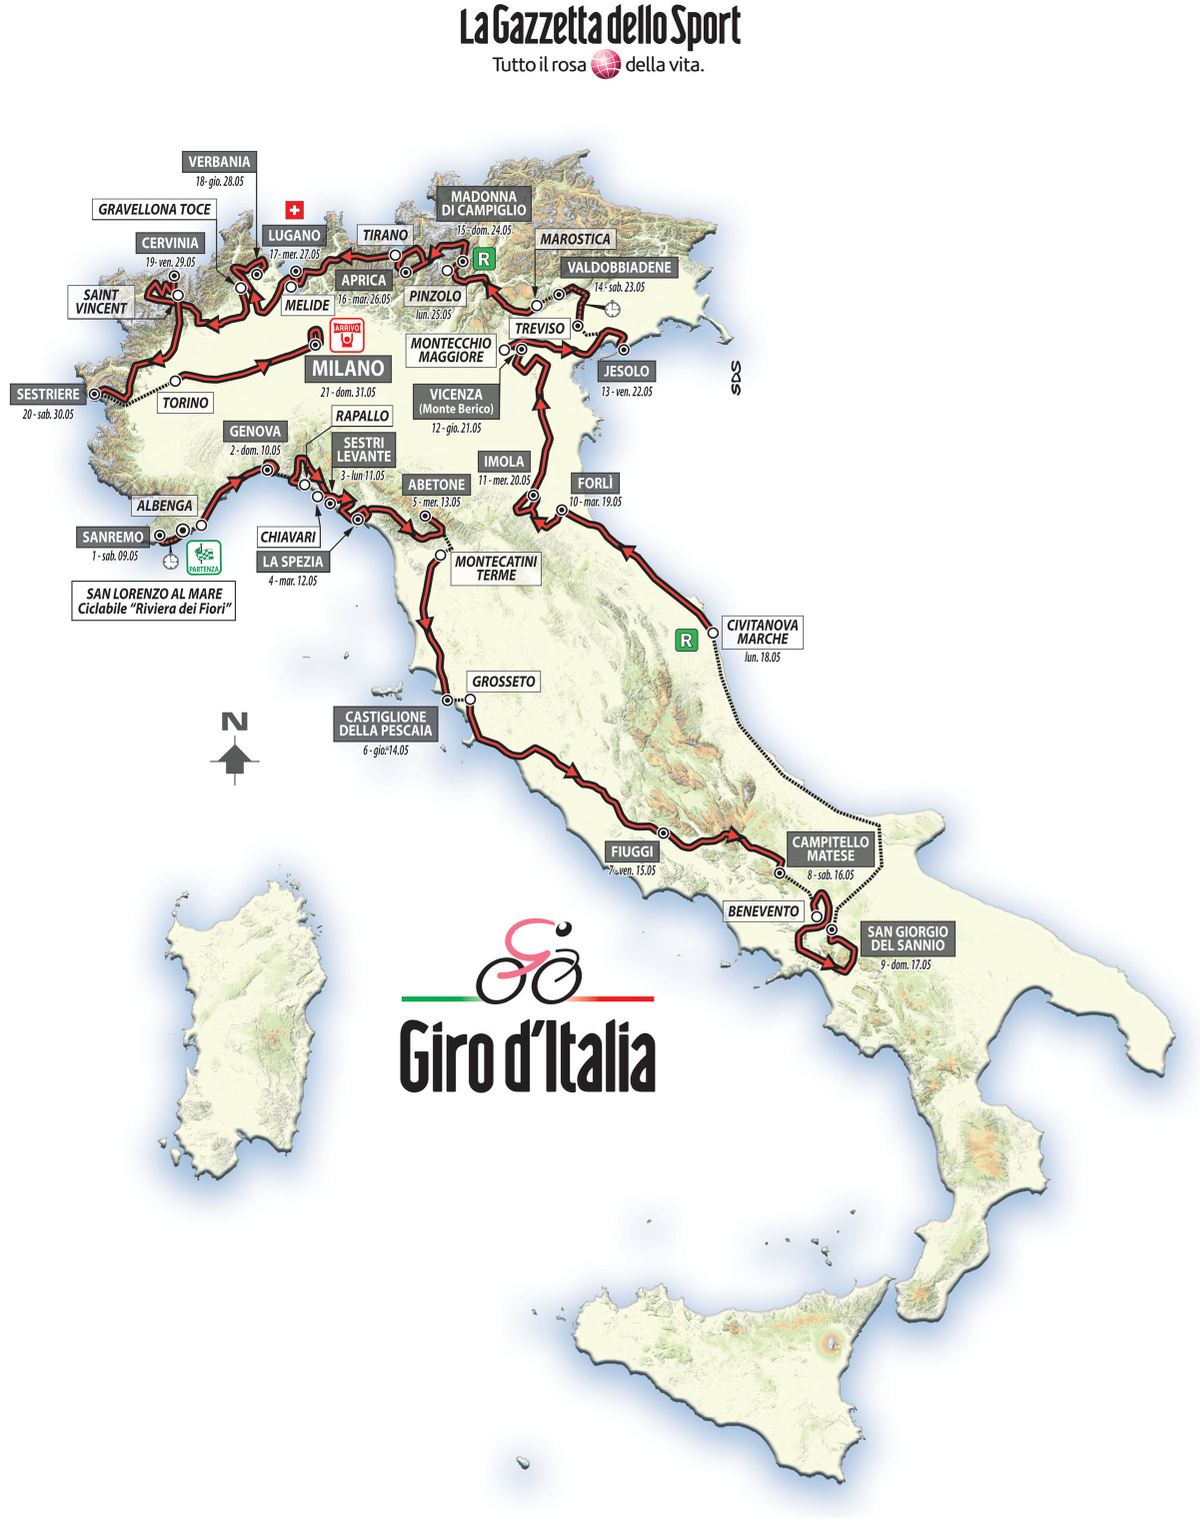 Giro 2015 - parcours